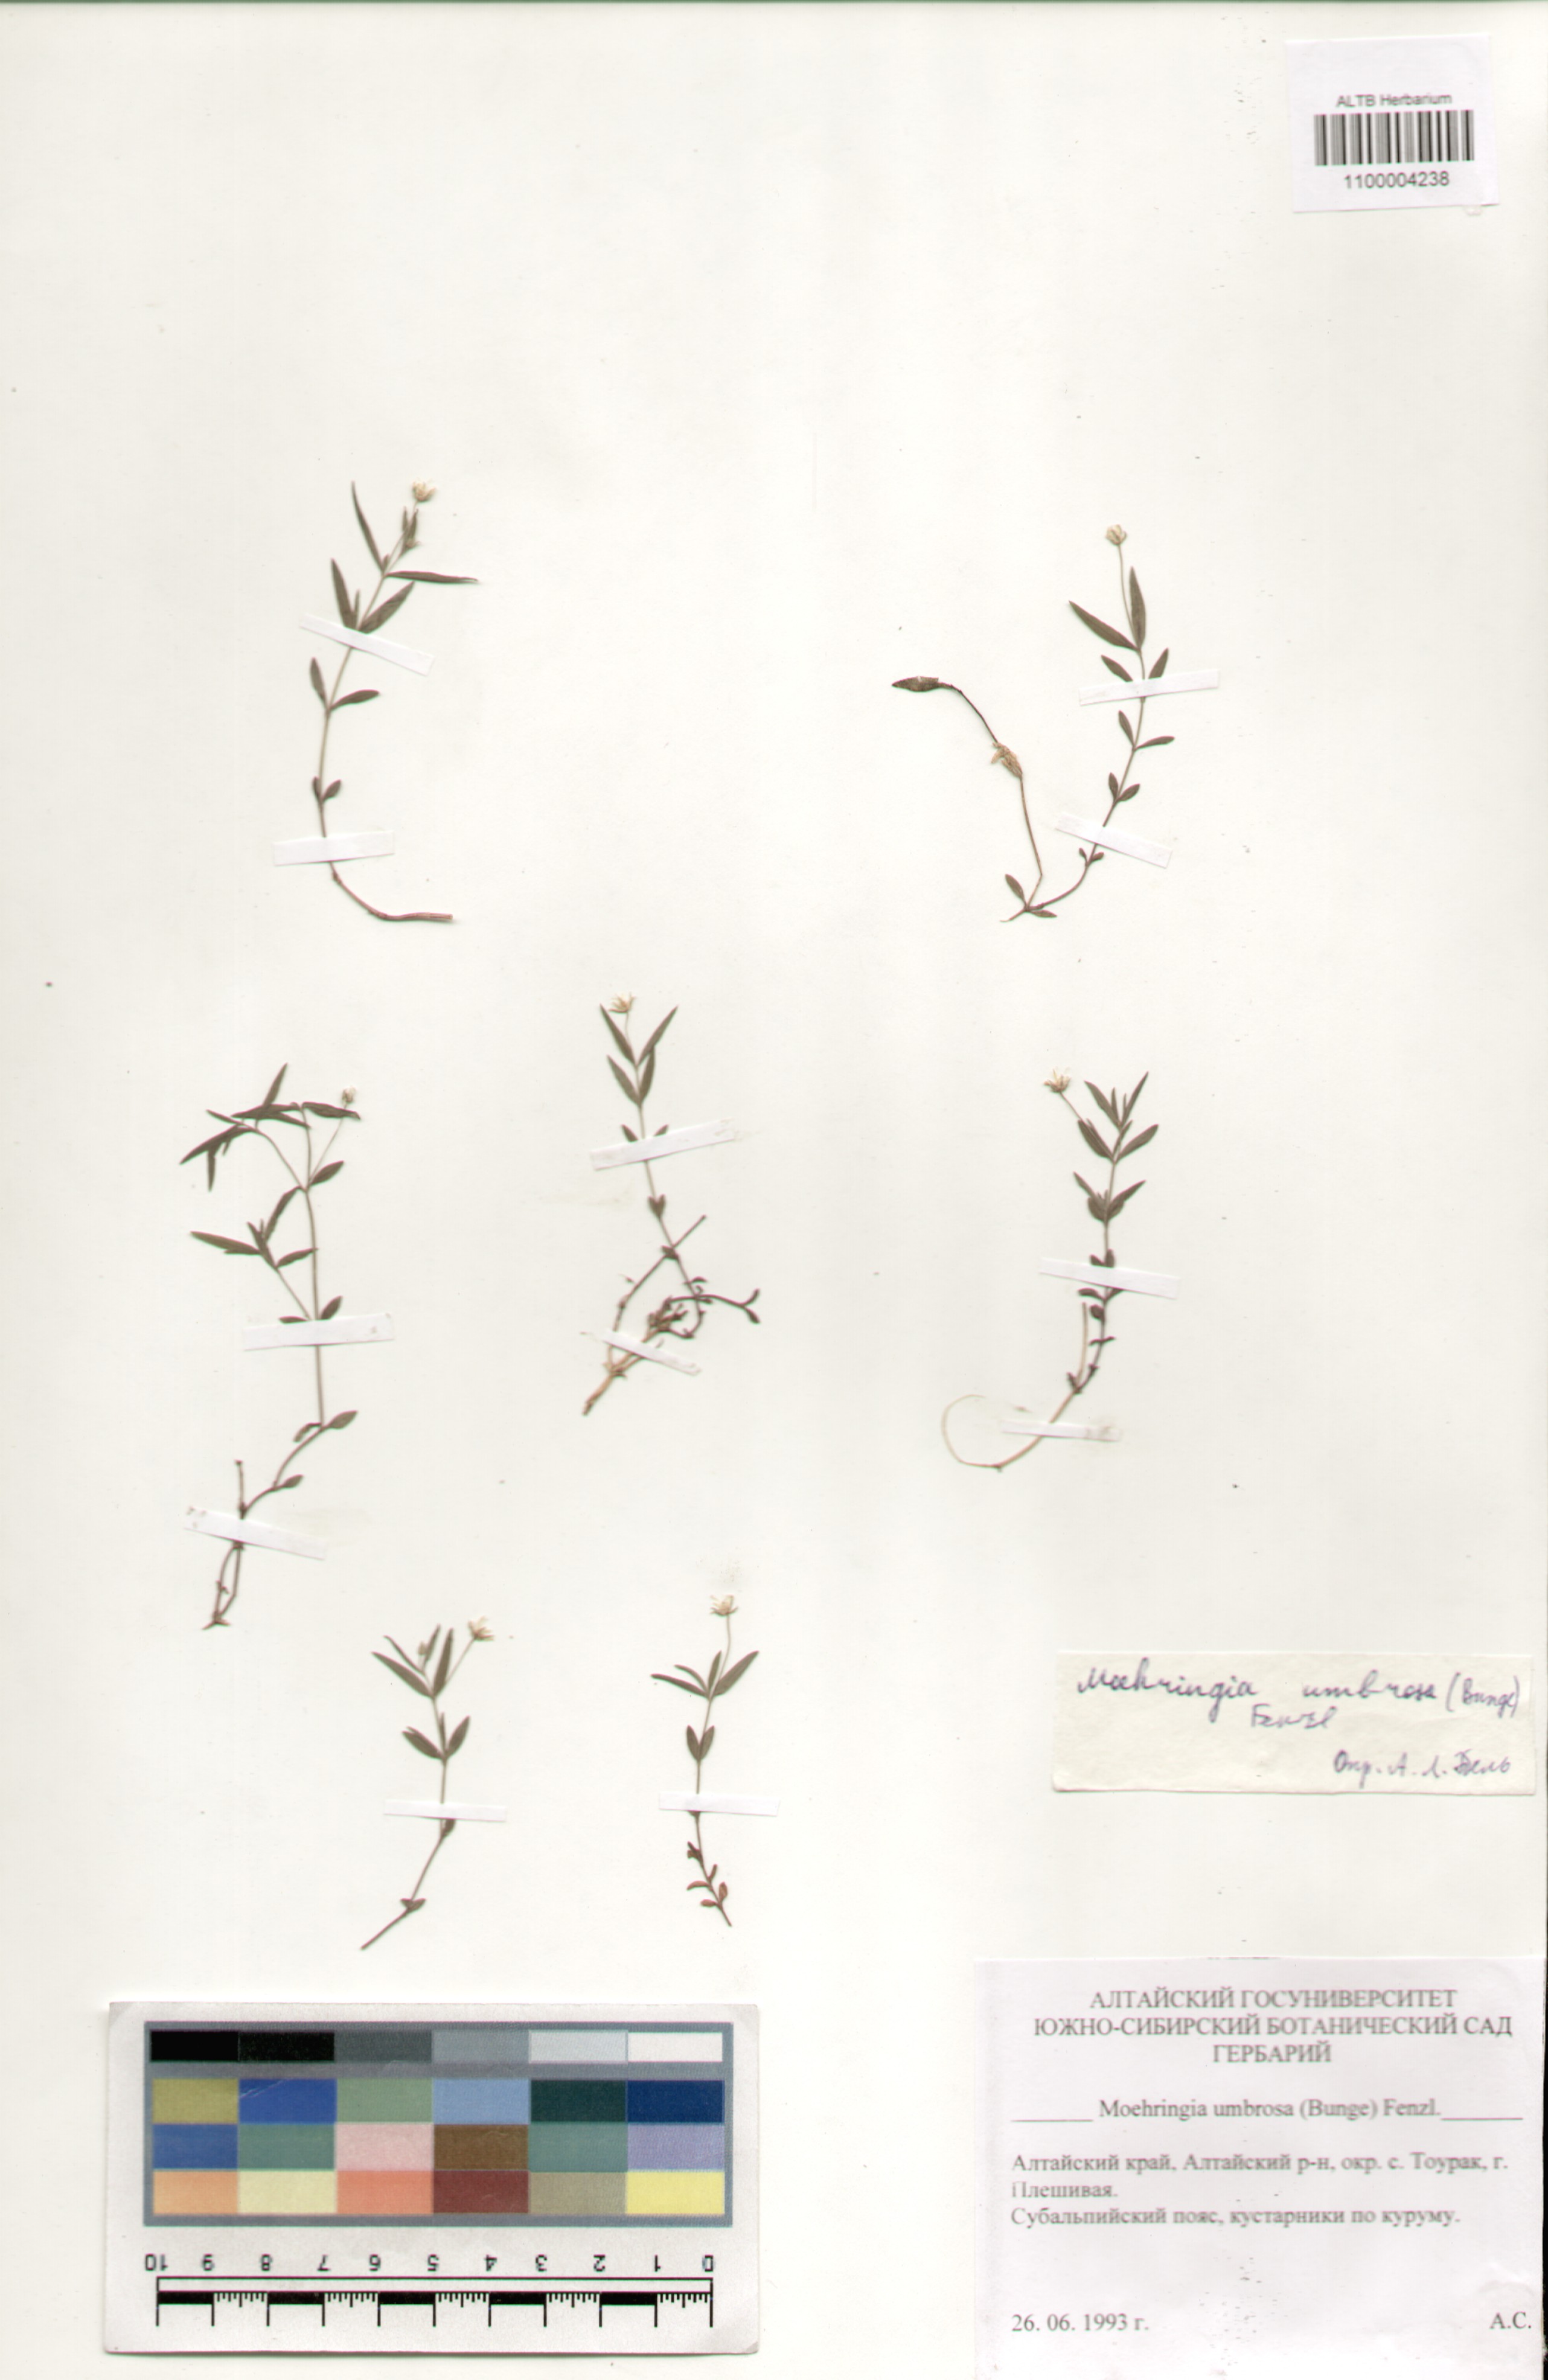 Caryophyllaceae,Moehringia umbrosa (Bunge) Fenzl.